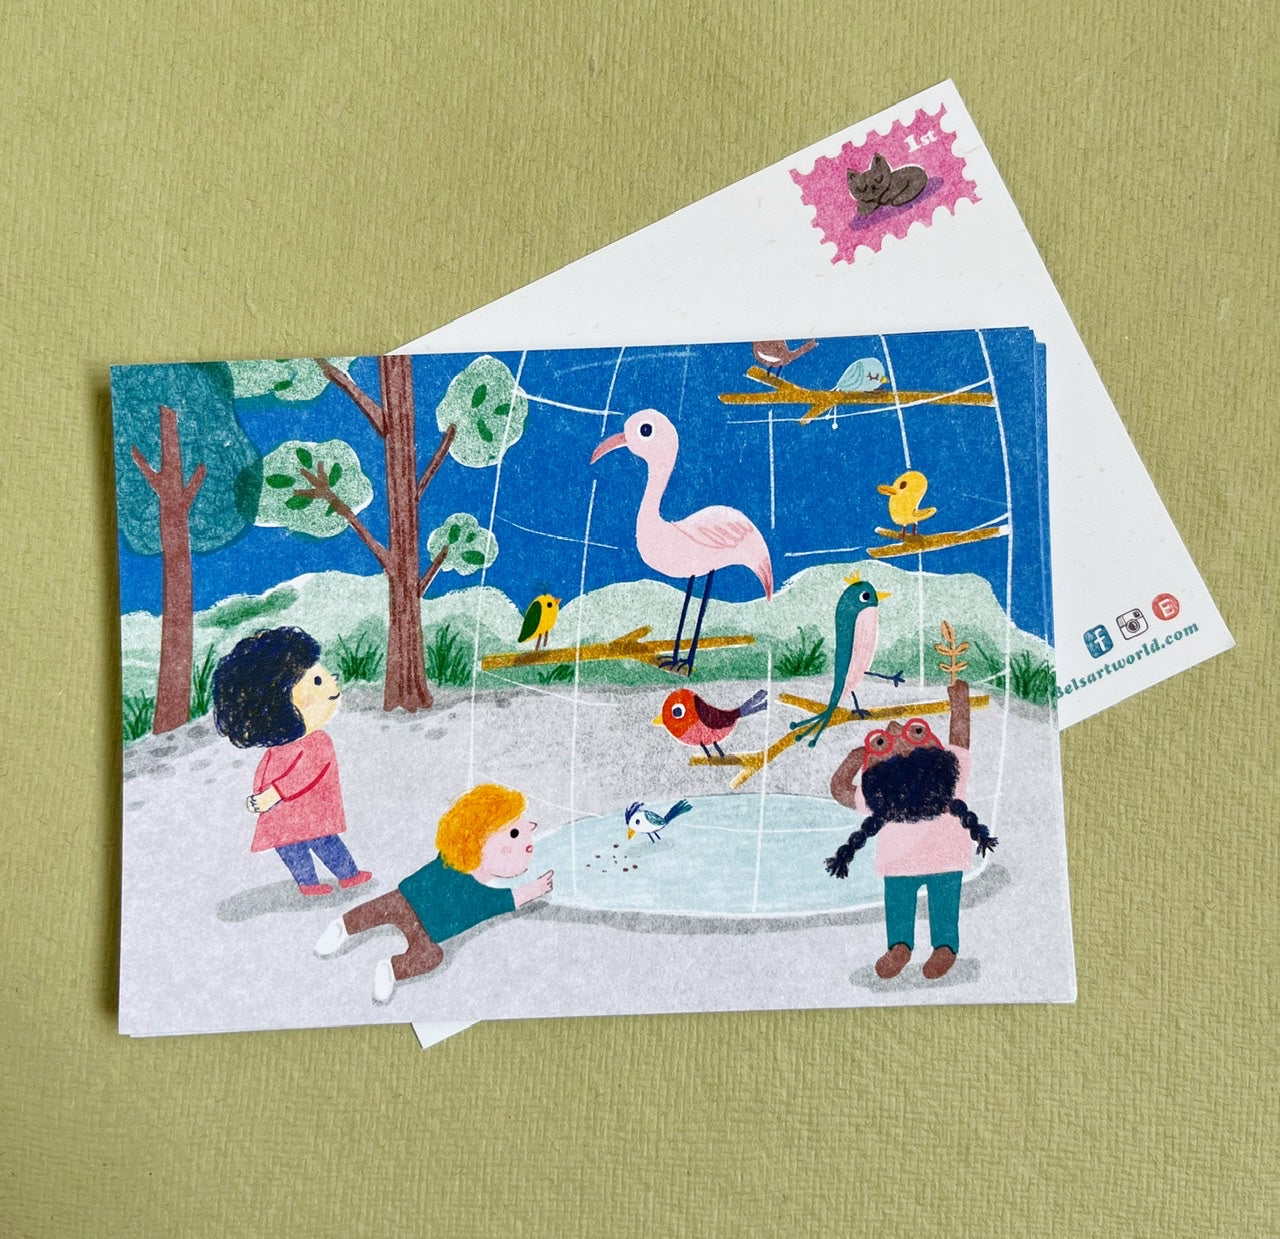 Illustrative postcard - cute adventure A6 postcard